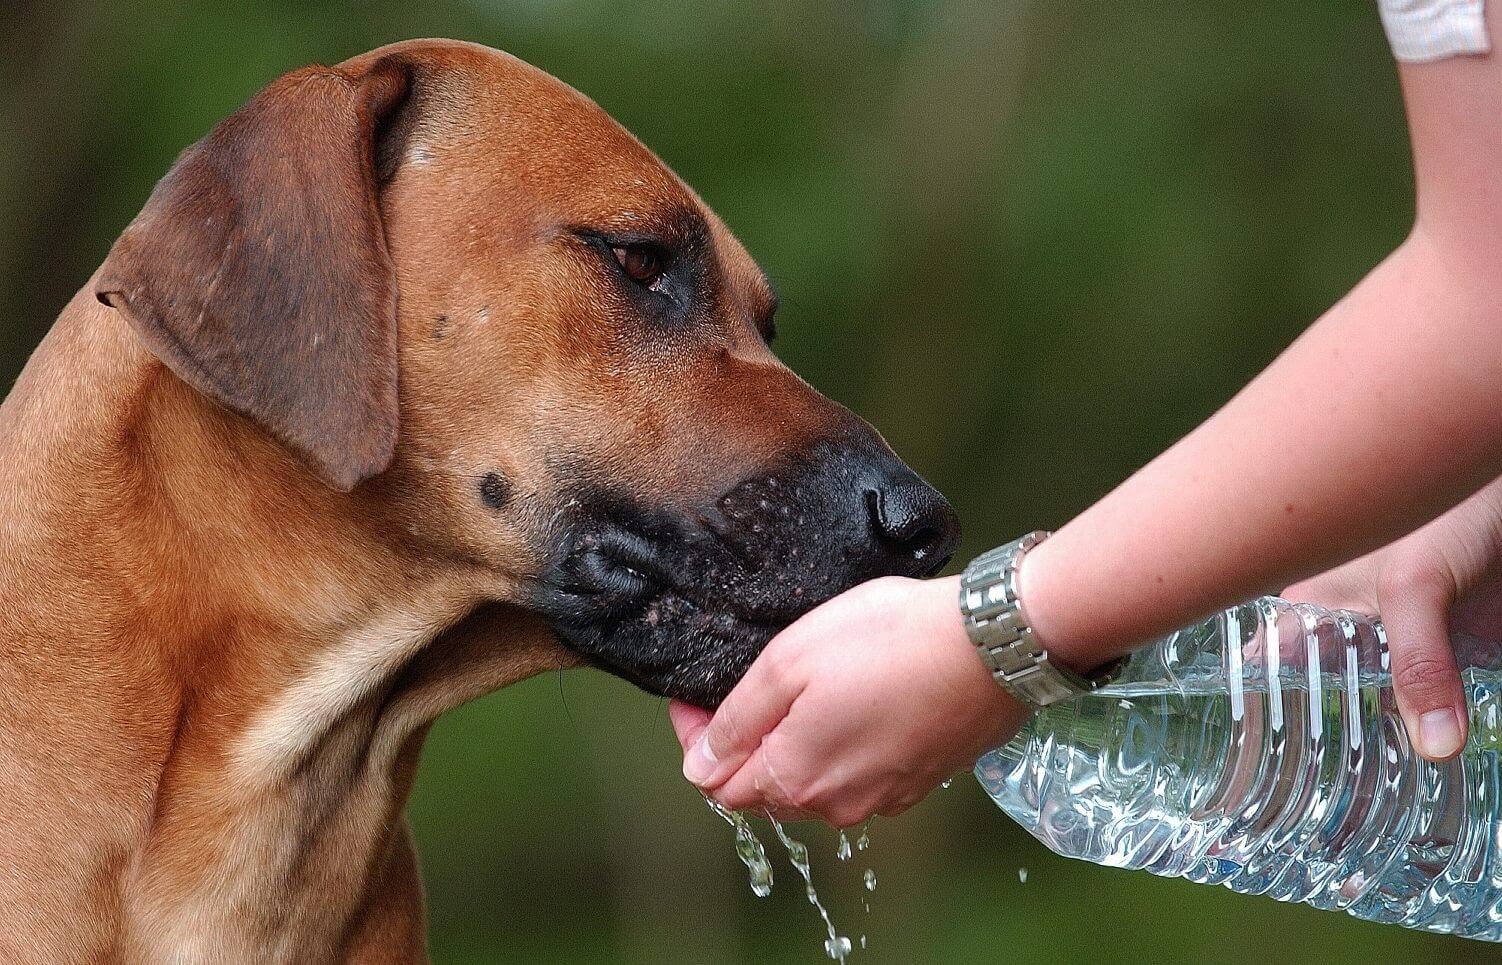 Na imagem, um cãozinho bebe água direto da garrafinha com a ajuda de seu dono.